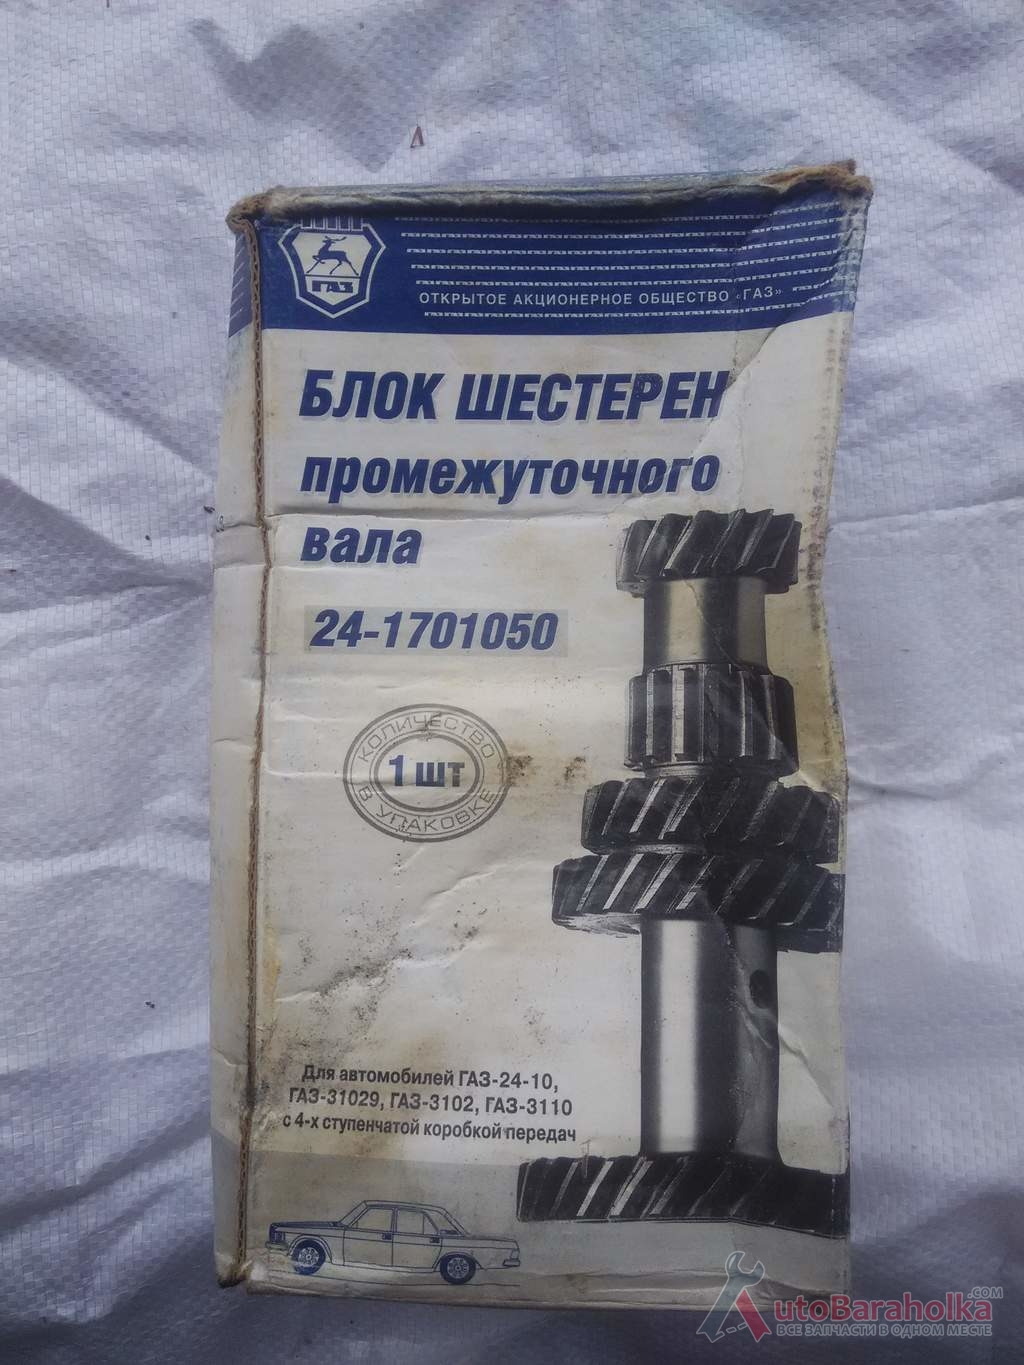 Продам блок шестерен промежуточного вала на Газ - 24 Одесса